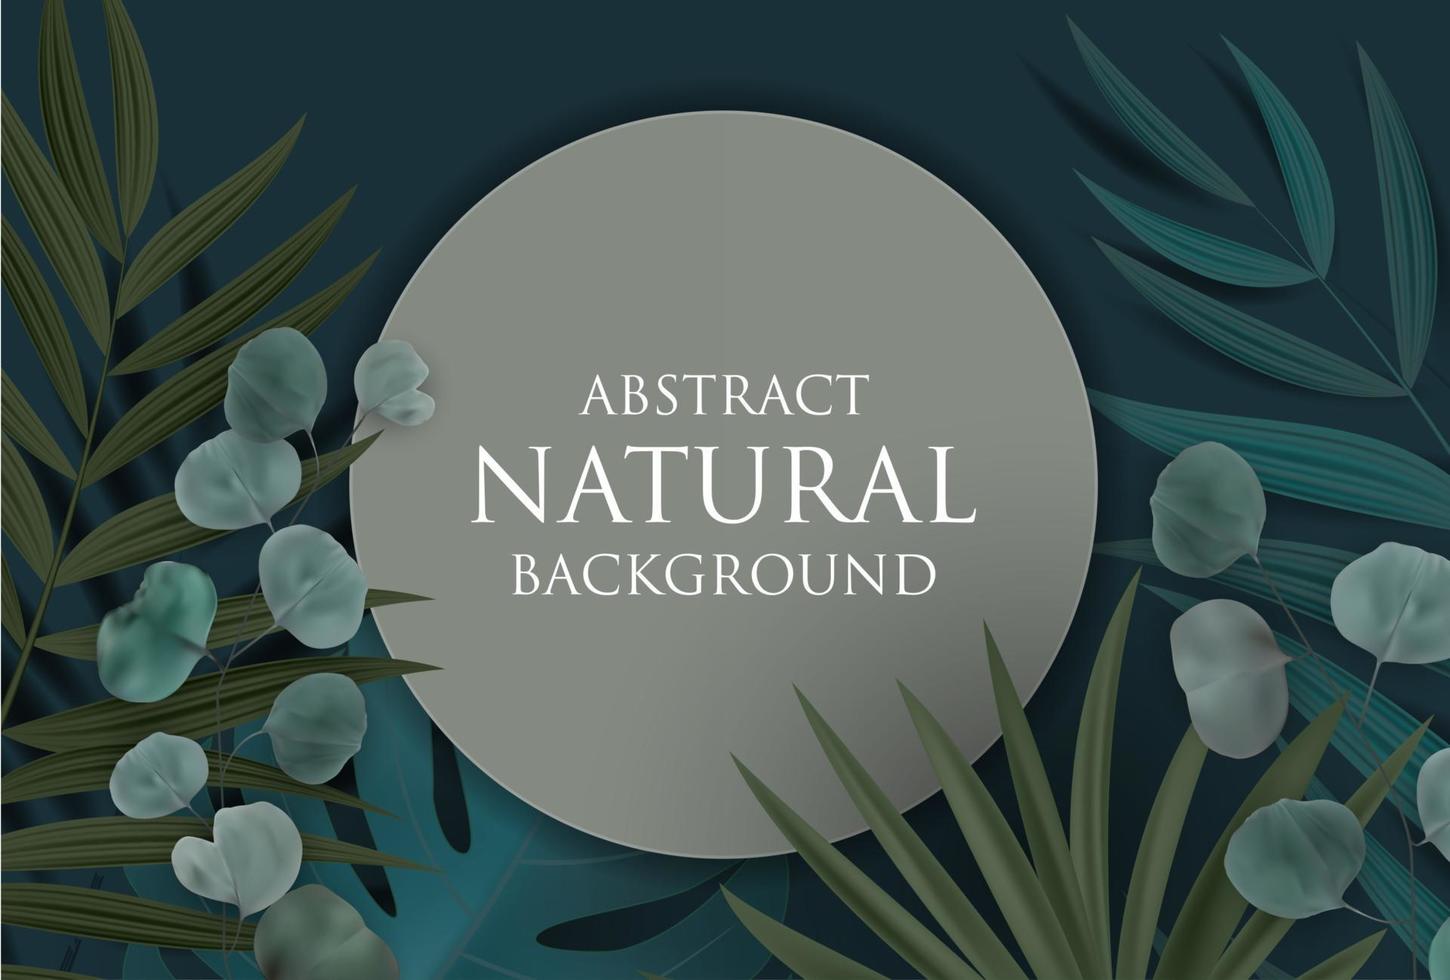 abstrakt naturlig bakgrund med tropisk palm, eukalyptus, monstera blad och ram. vektor illustration